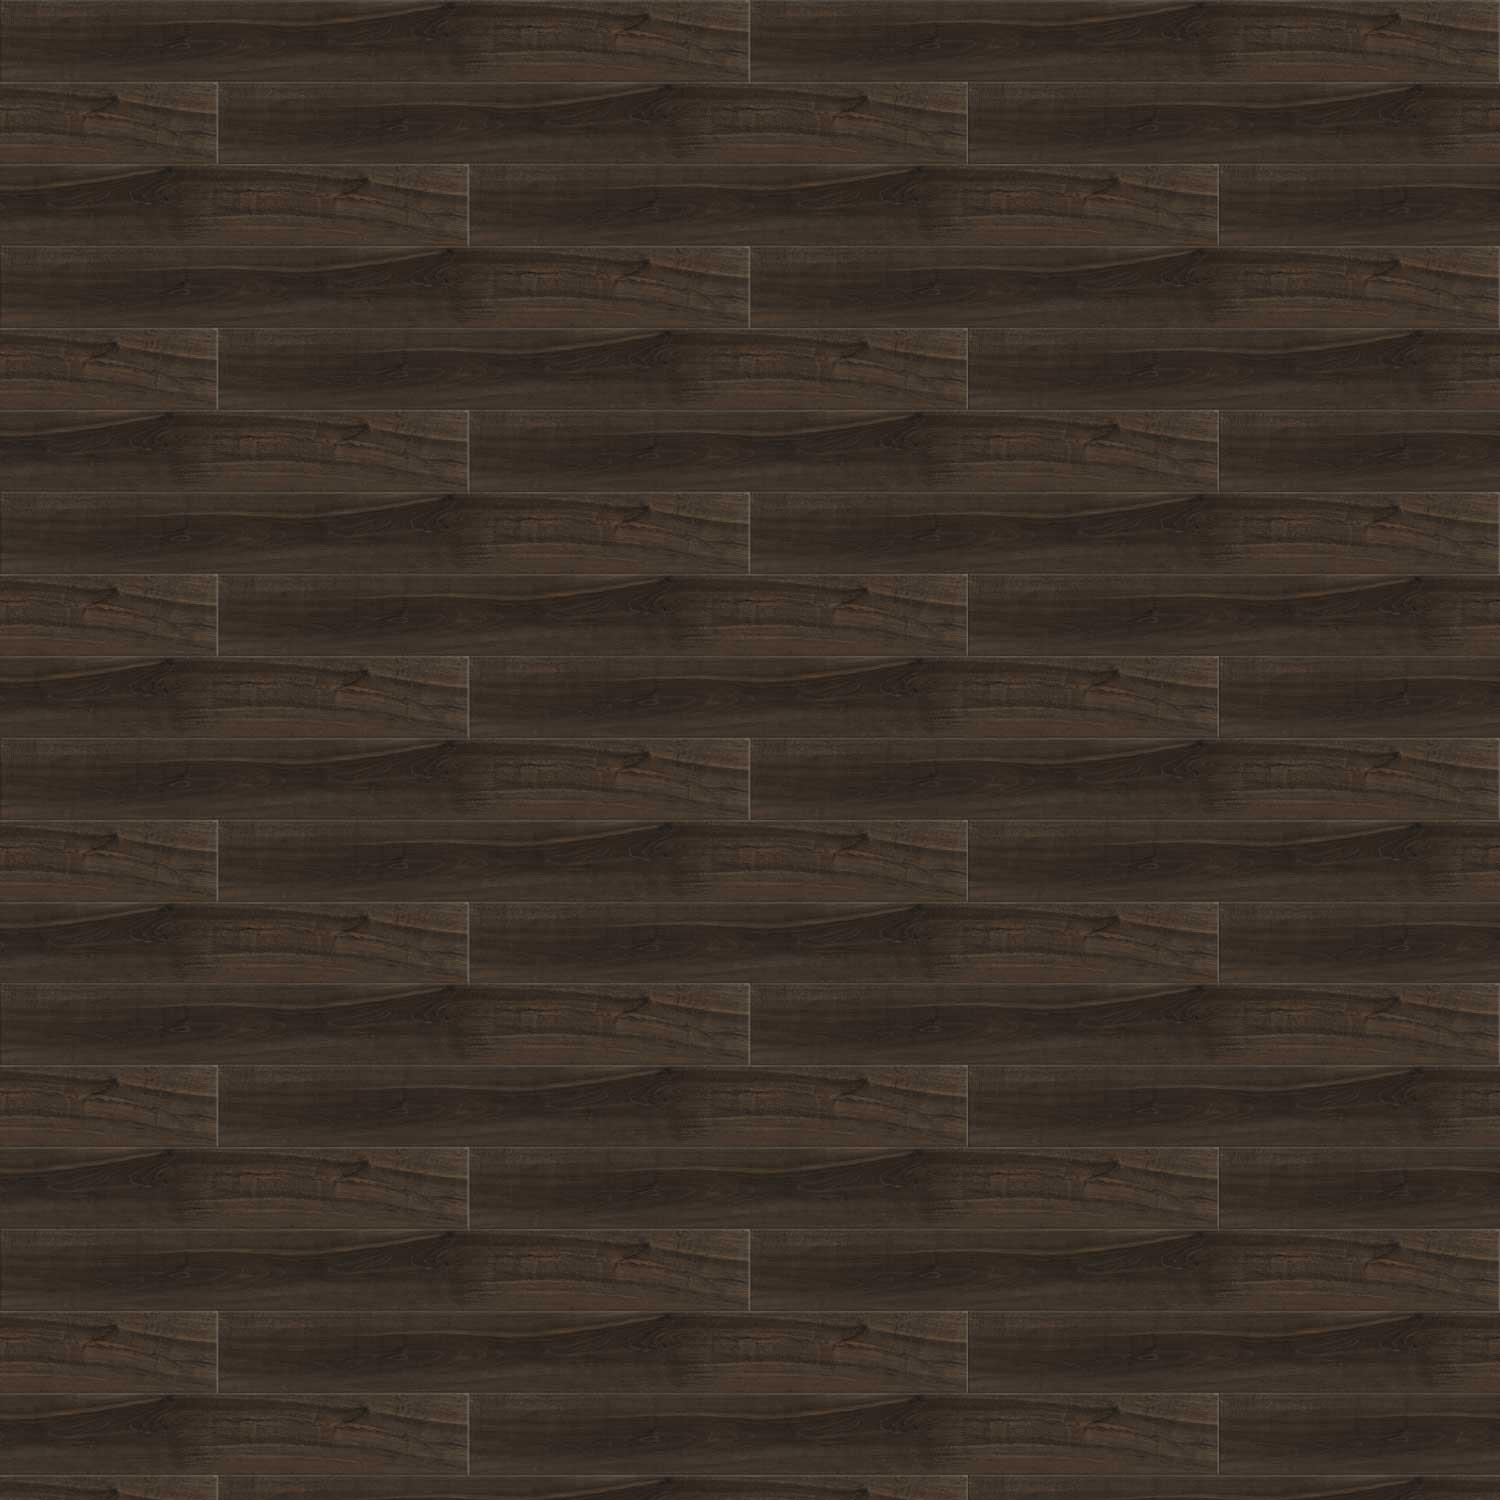 Timber Black Porcelain Tile Wood Effect Walls Floor Large 200x1200mm